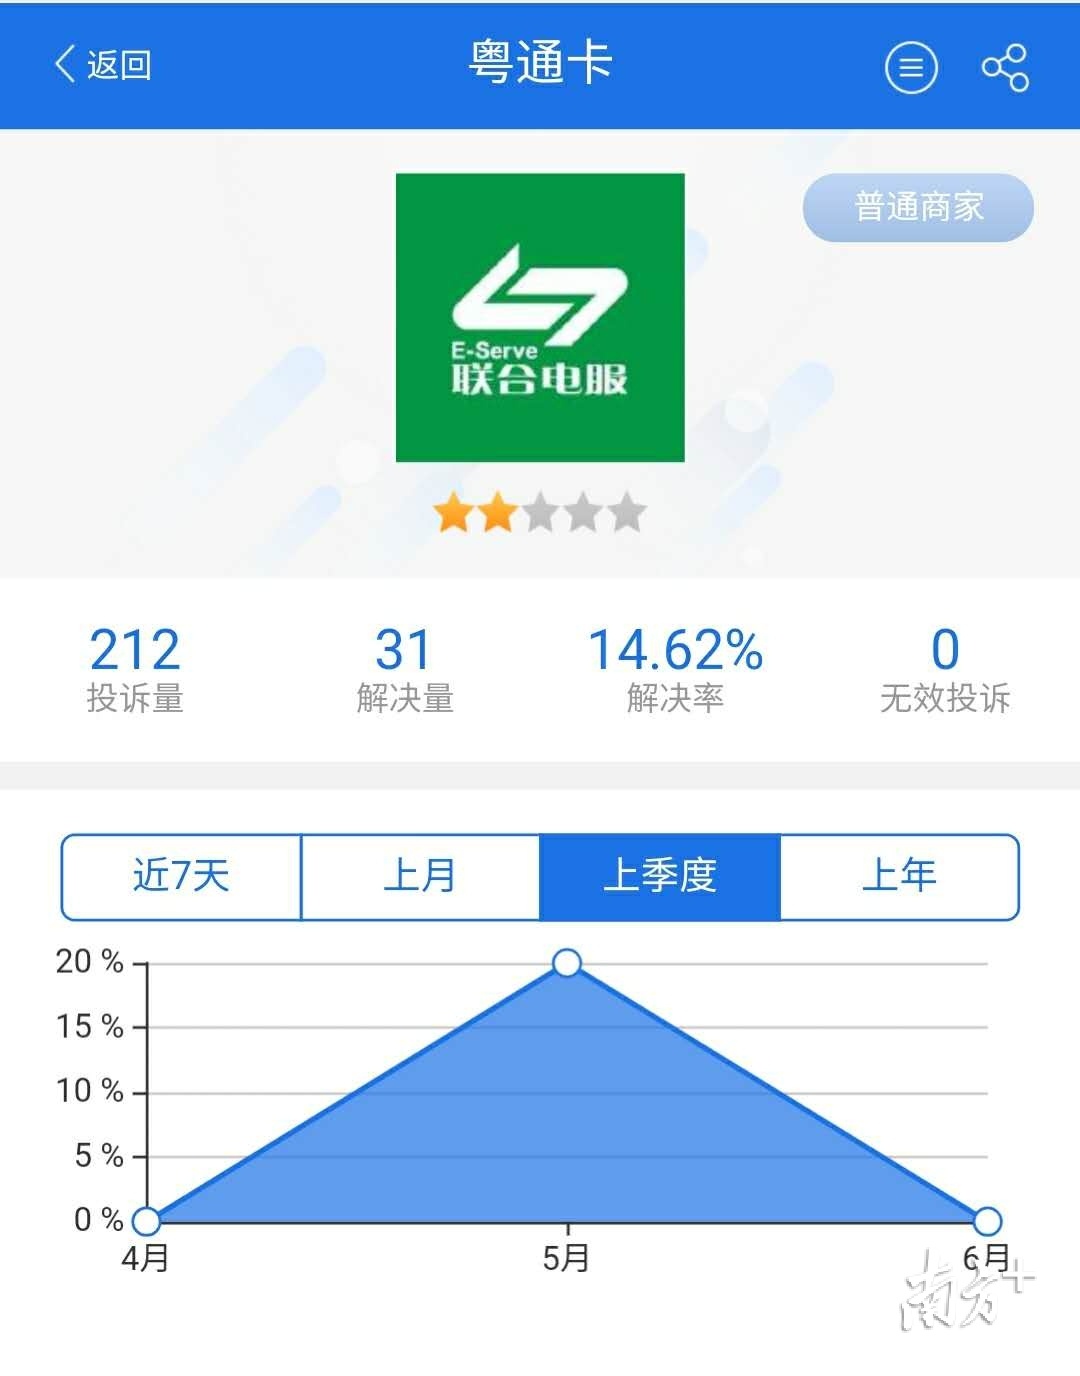 聚投诉平台显示，粤通卡的投诉解决率为14.62%。